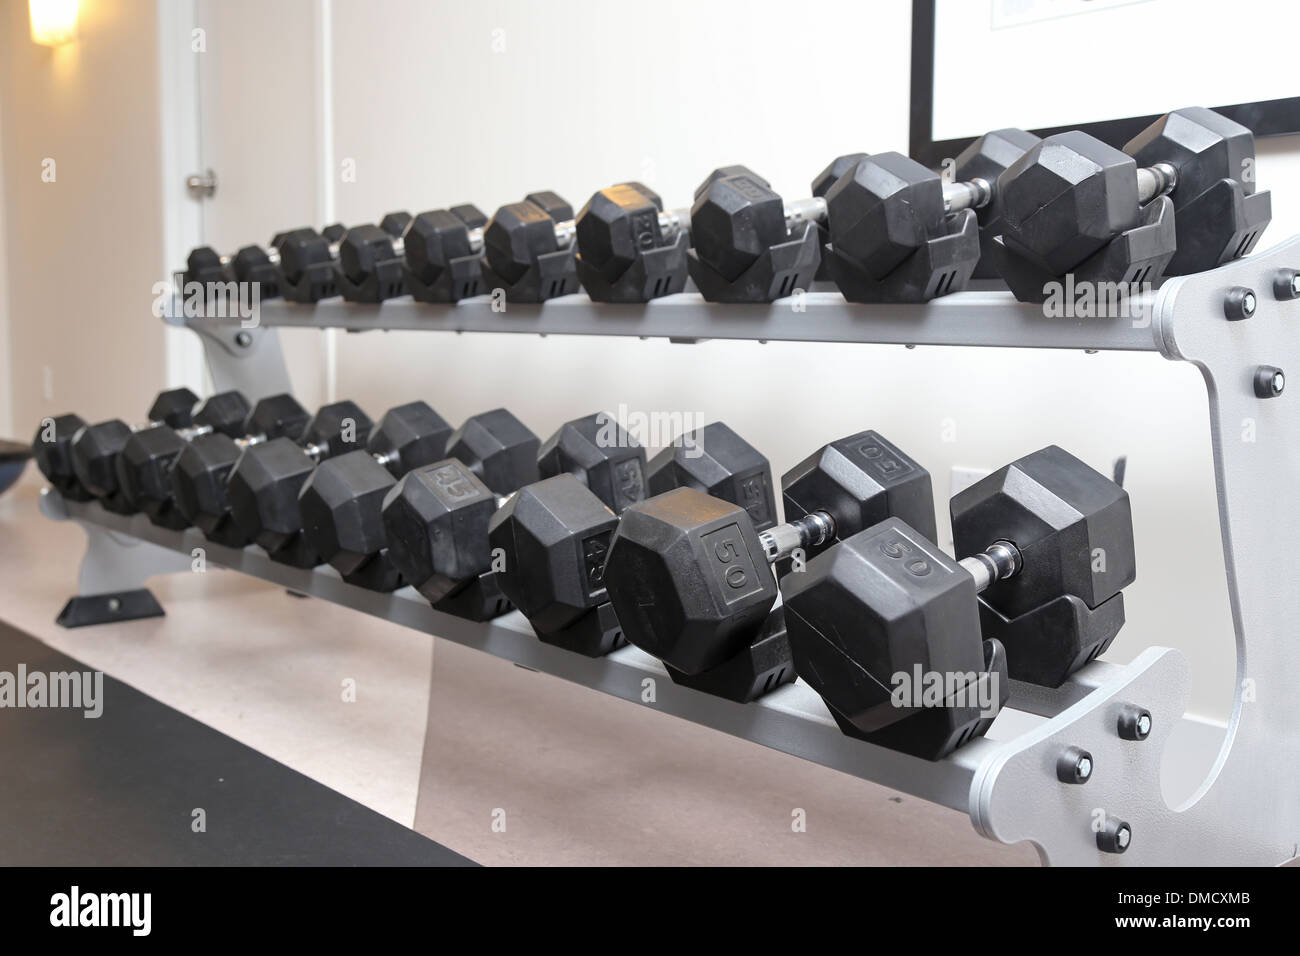 Les cloches sourdes-muettes alignées dans un studio de remise en forme Banque D'Images